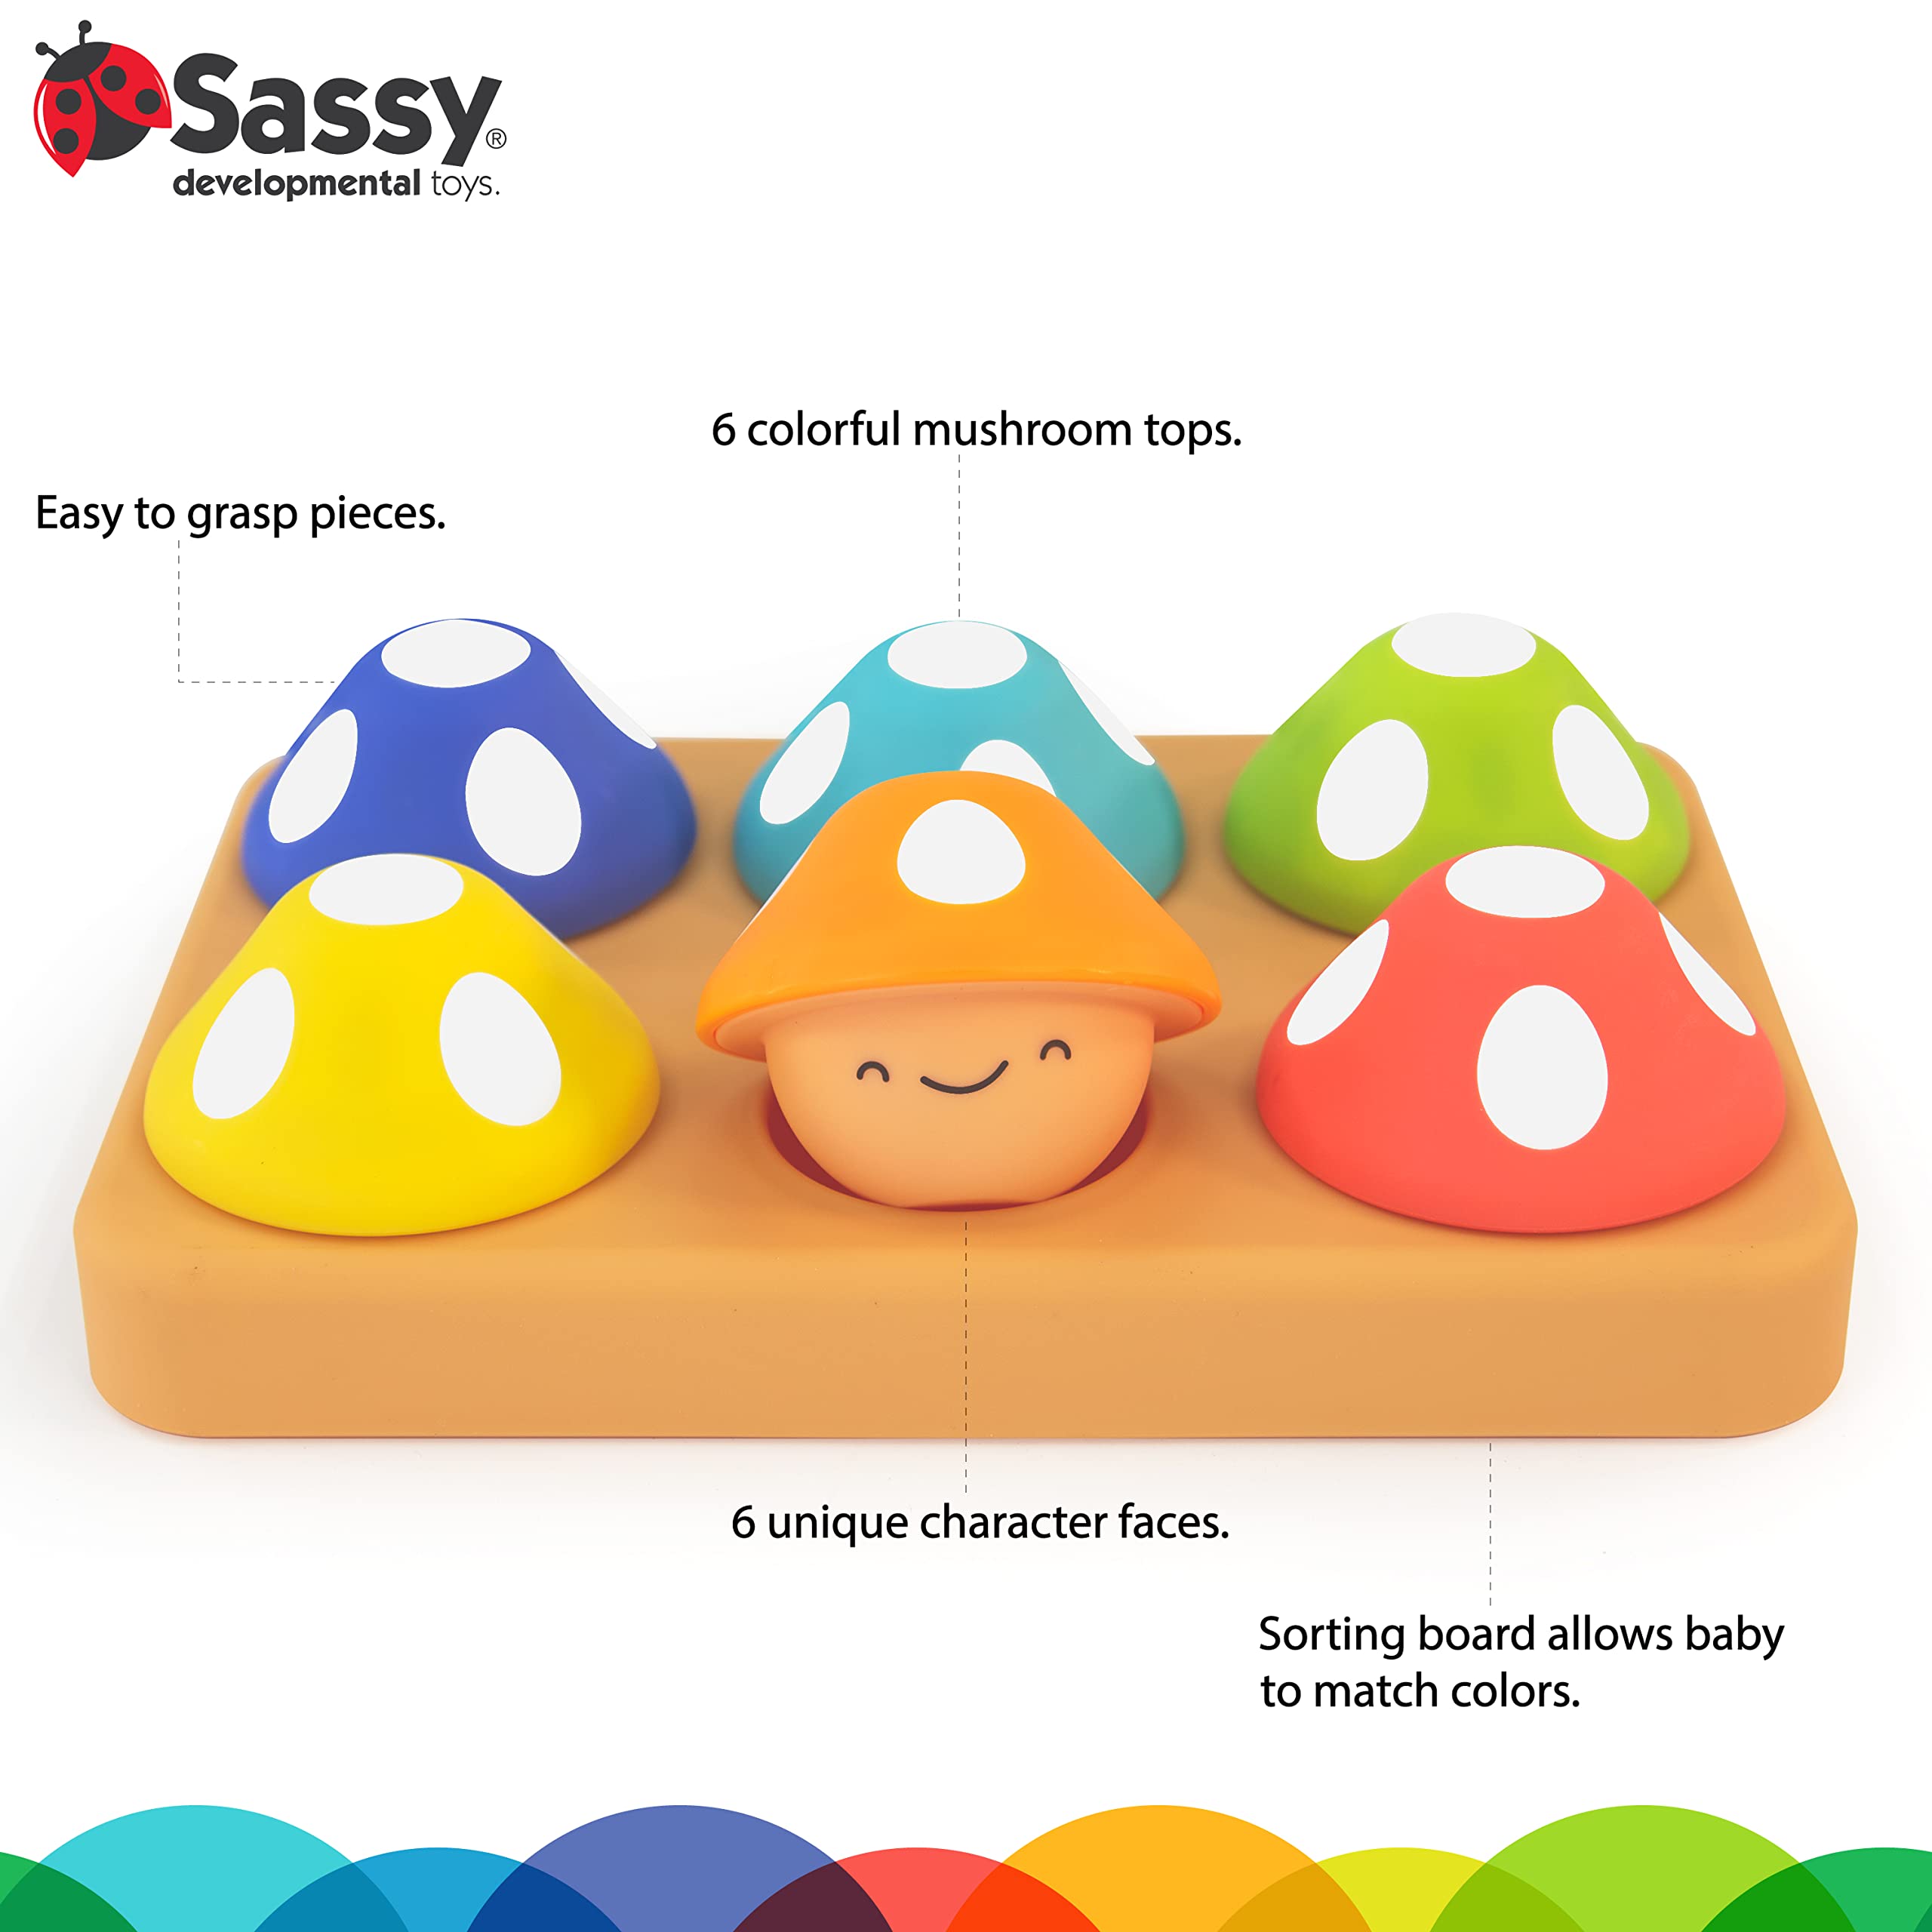 SASSY Mischievous Matching Mushrooms Toy